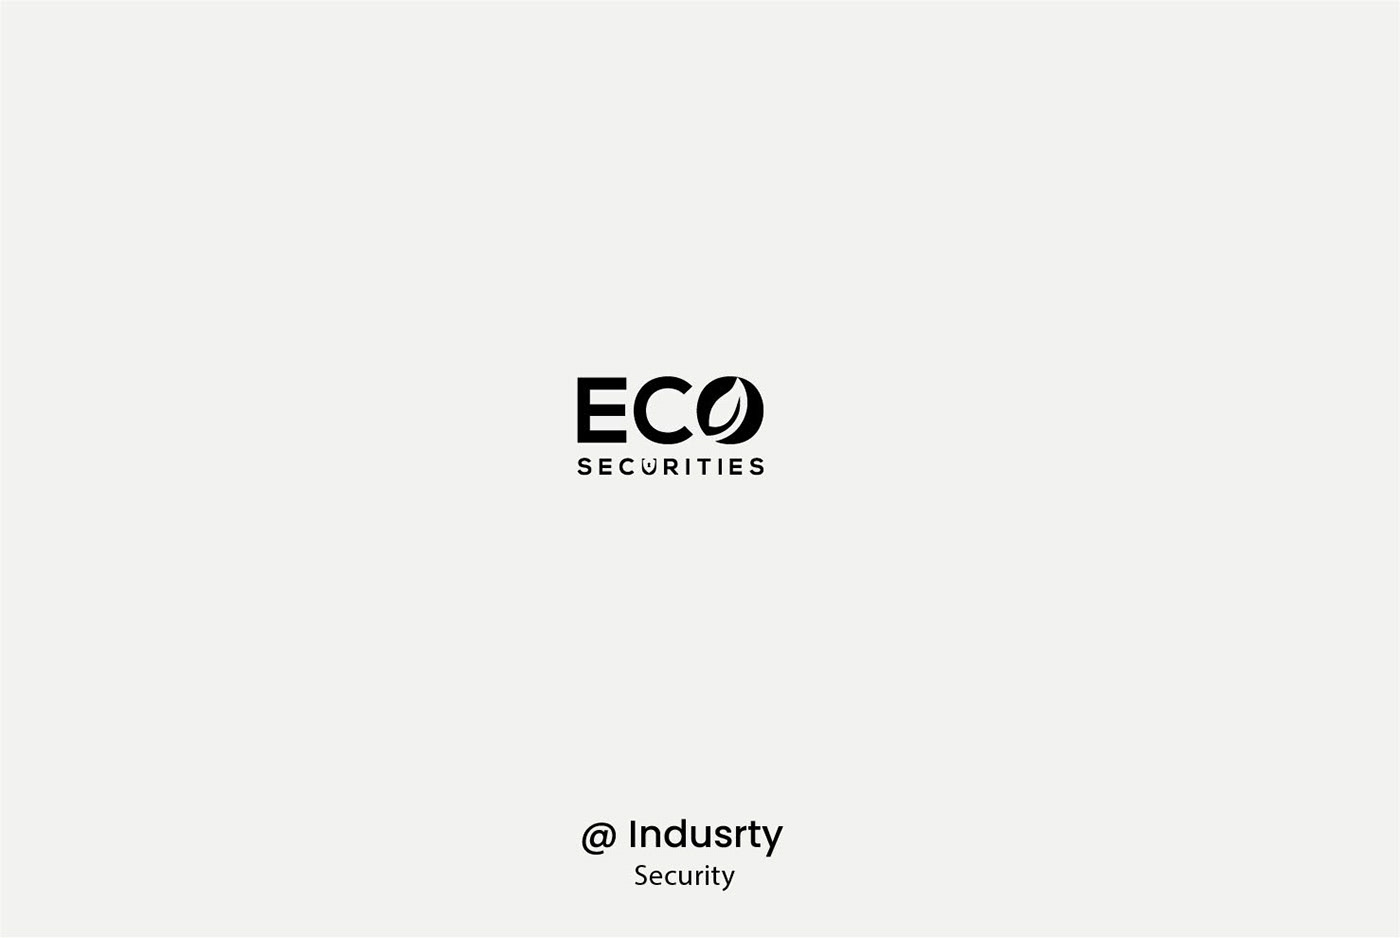 Eco securities
